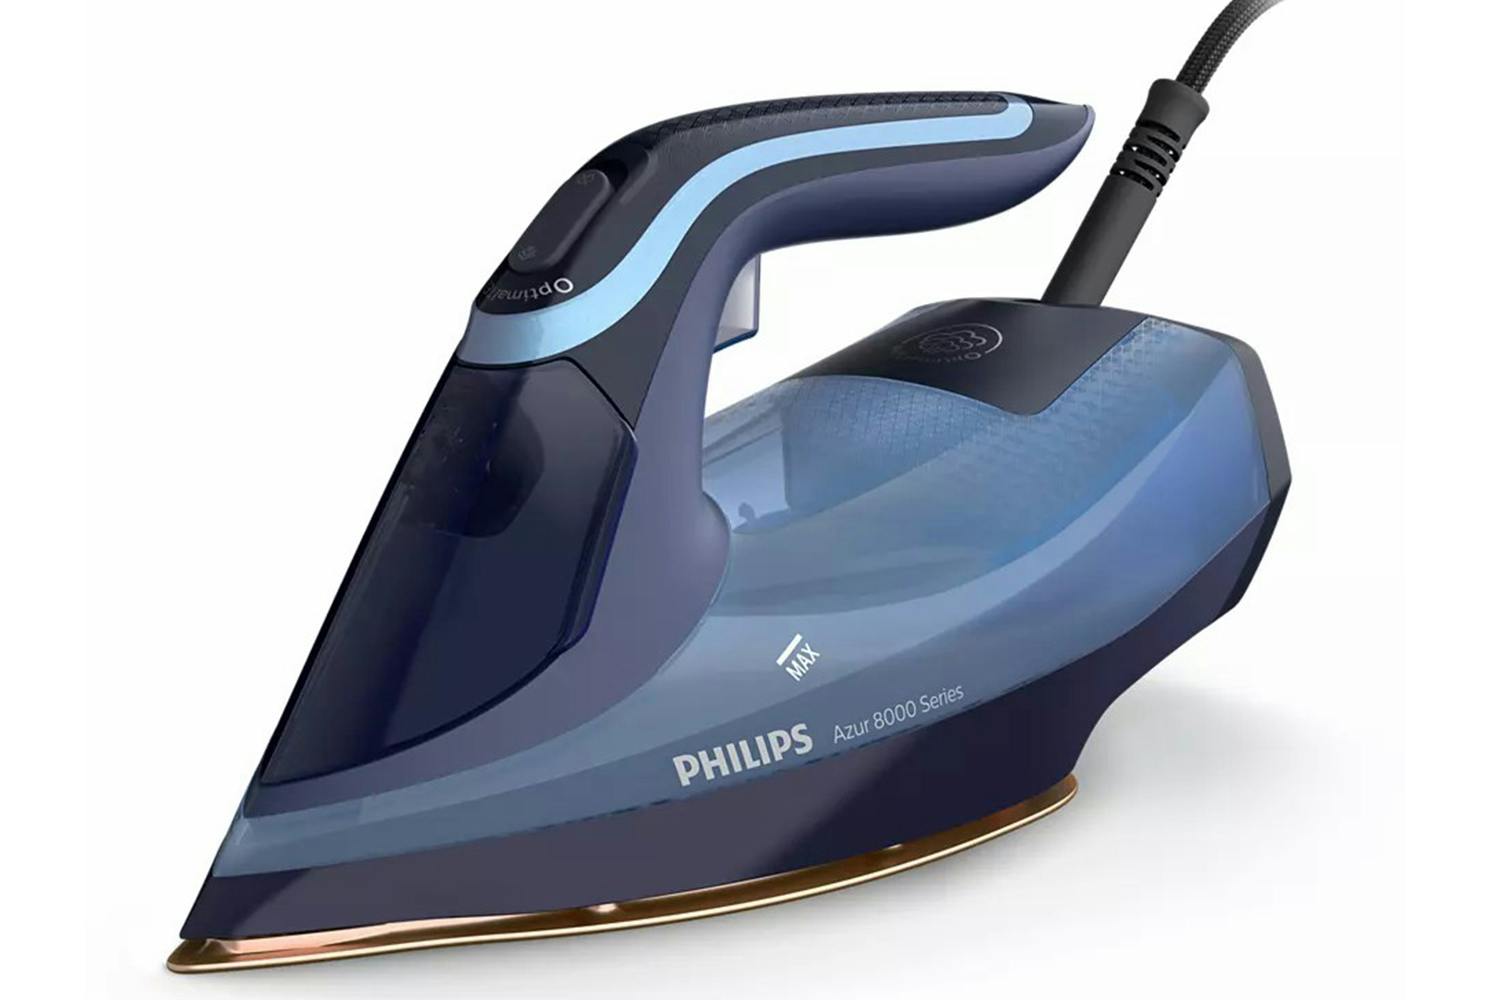 Philips 3000W Azur 8000 Series Steam Iron | DST8020/26